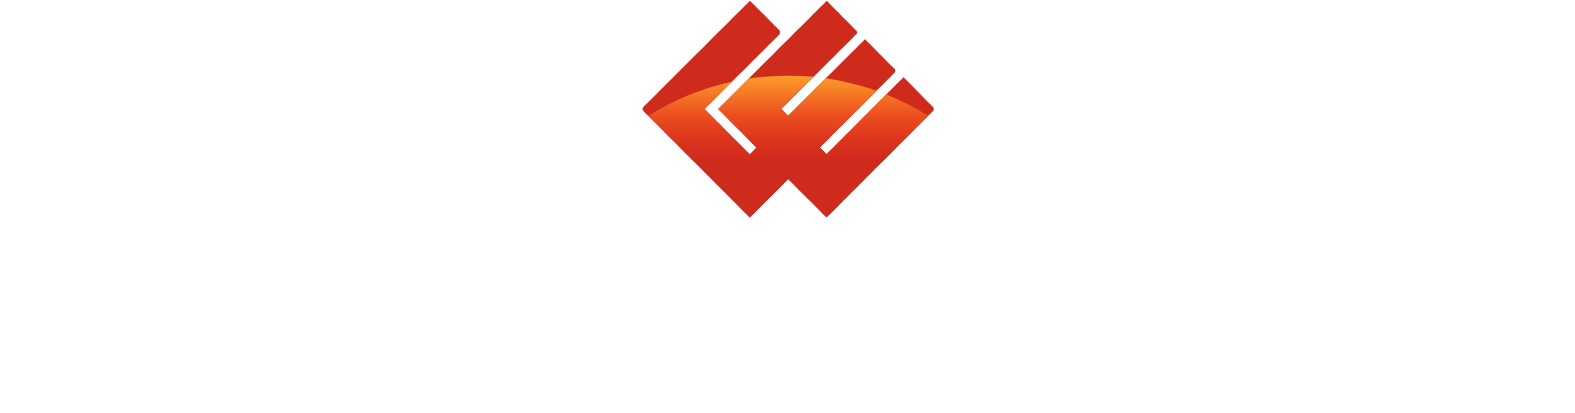 China Longyuan Power Group logo grand pour les fonds sombres (PNG transparent)